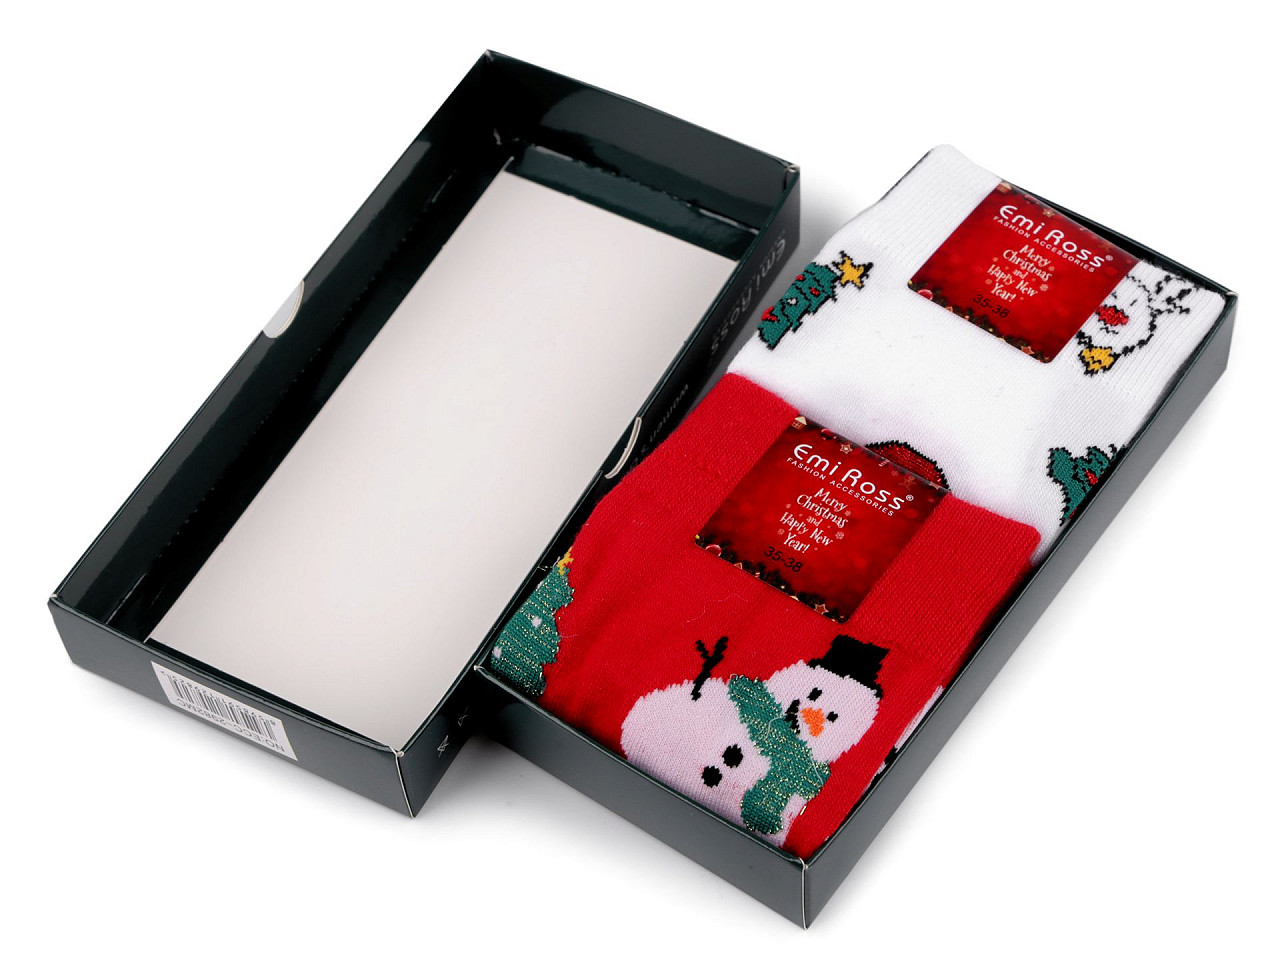 Șosete de Crăciun în cutie cadou Emi Ross, Mărime: 35 - 38, mix aleatoriu, 2 perechi